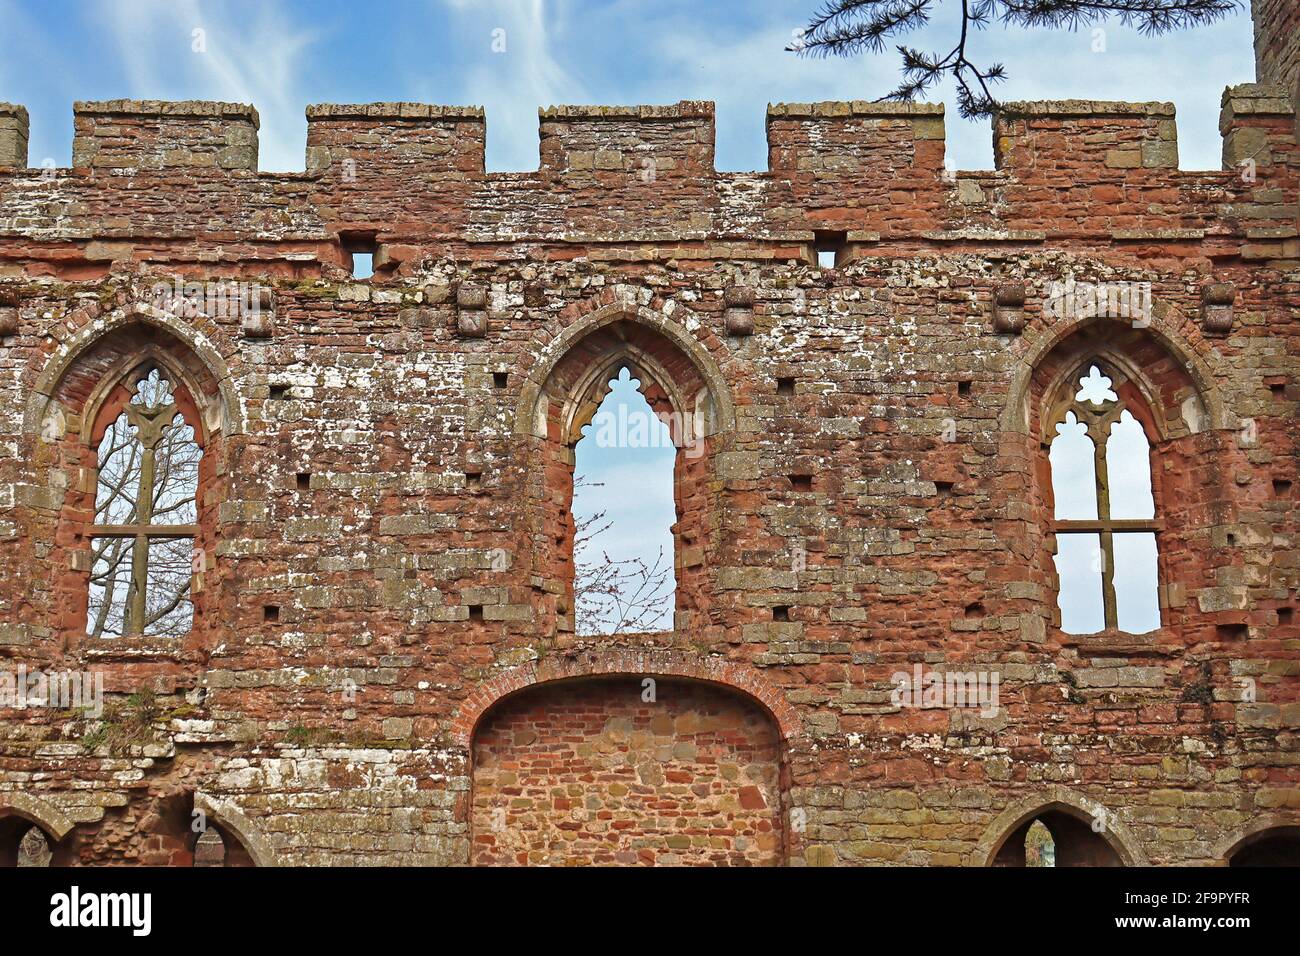 Rovine del castello di Acton Burnell. Patrimonio architettonico medievale britannico. Castello costruito con pietra arenaria rossa. Shropshire, Inghilterra, Regno Unito. Foto Stock